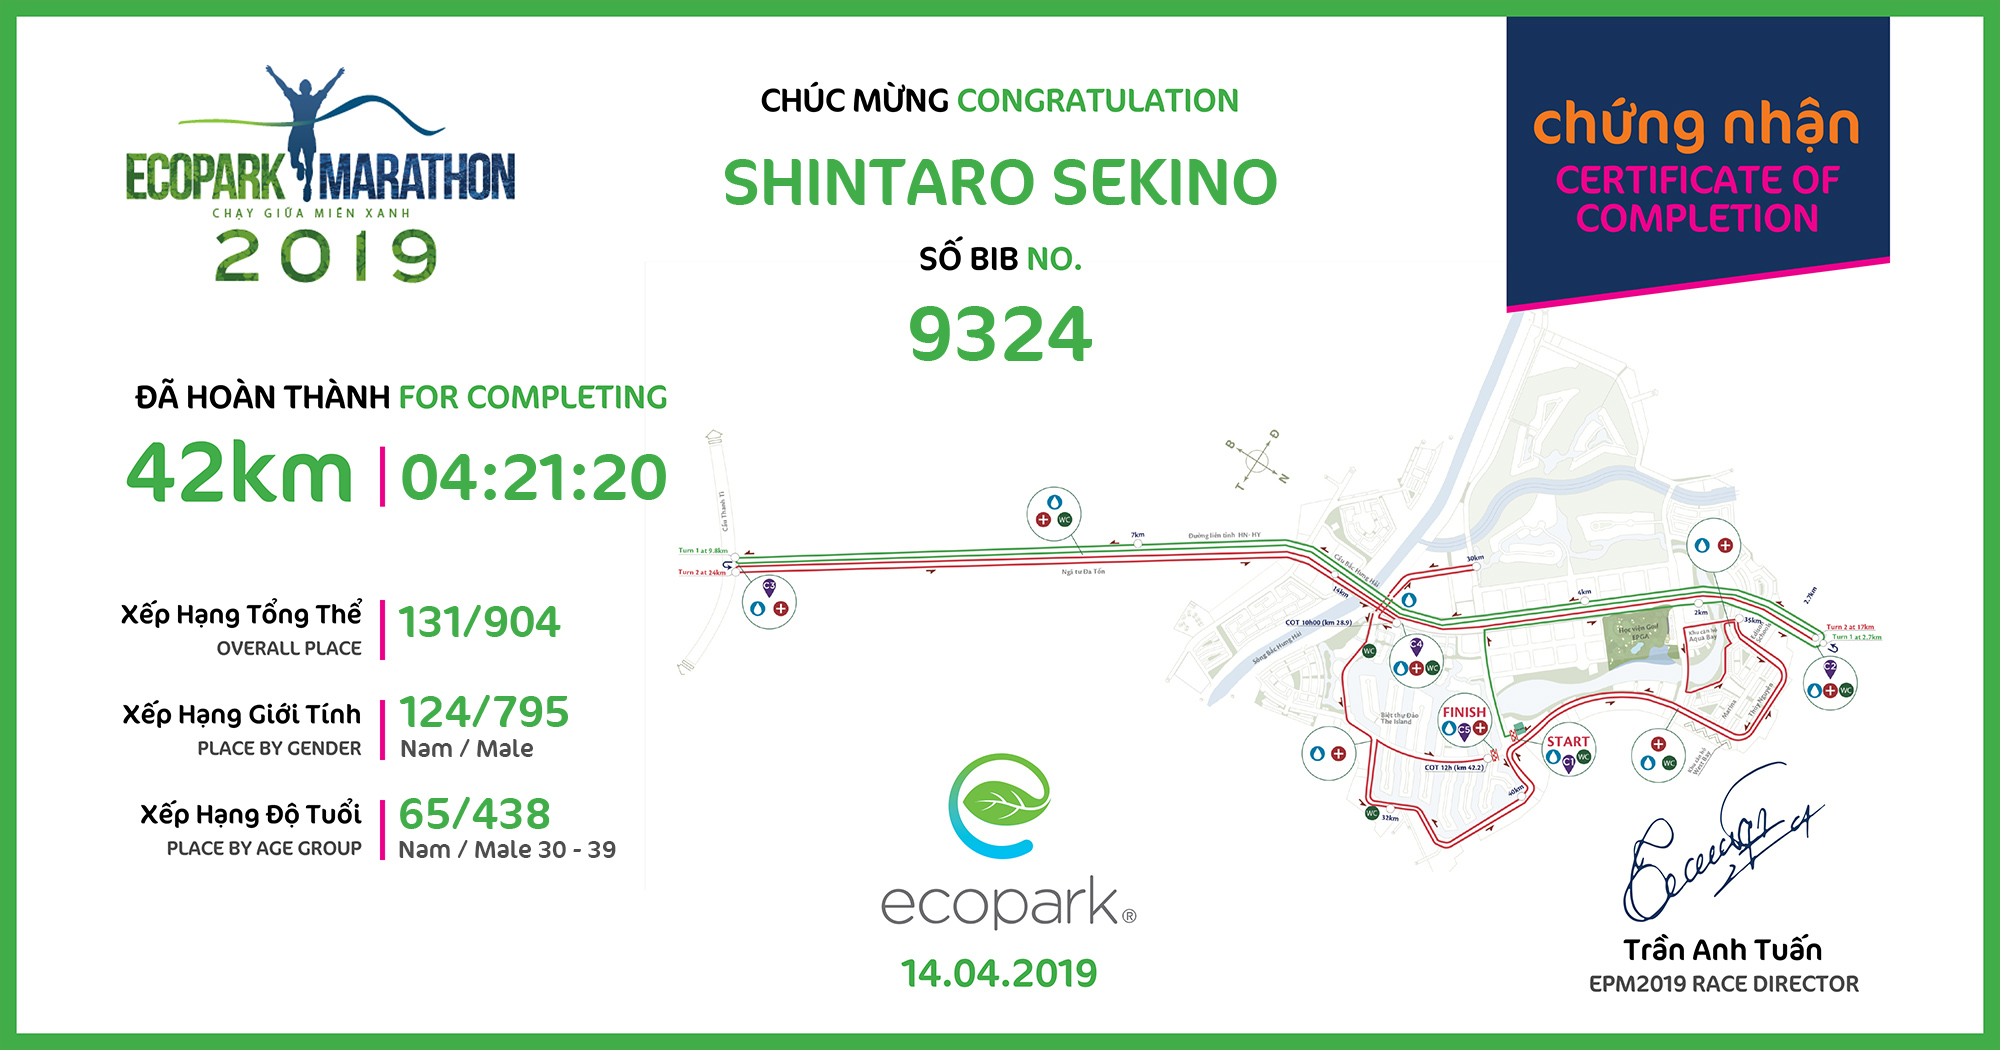 9324 - Shintaro sekino